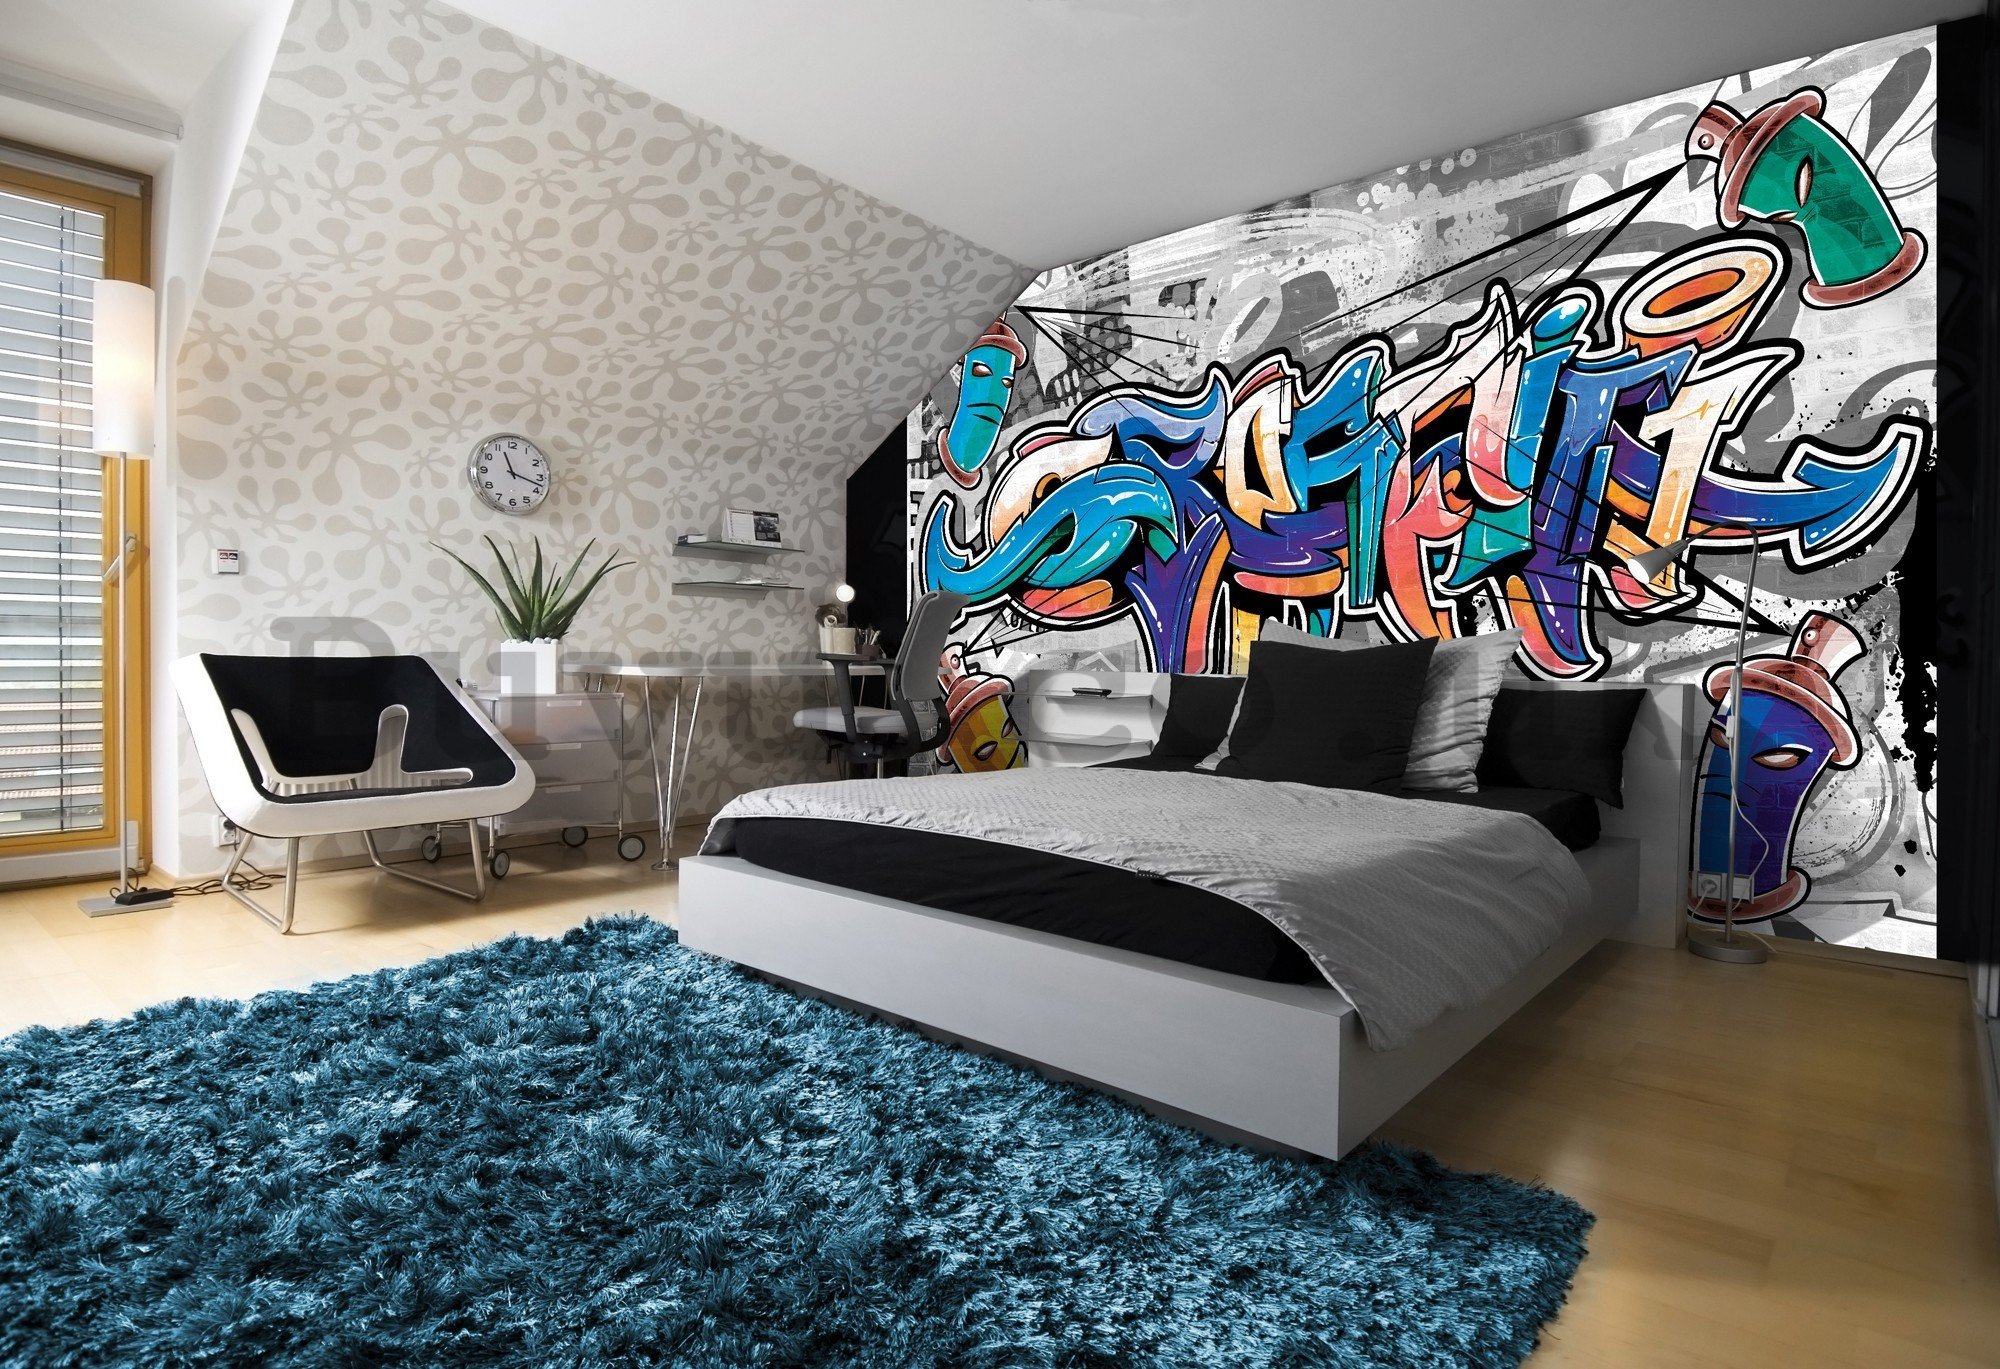 Wall mural vlies: Graffiti (9) - 416x254 cm